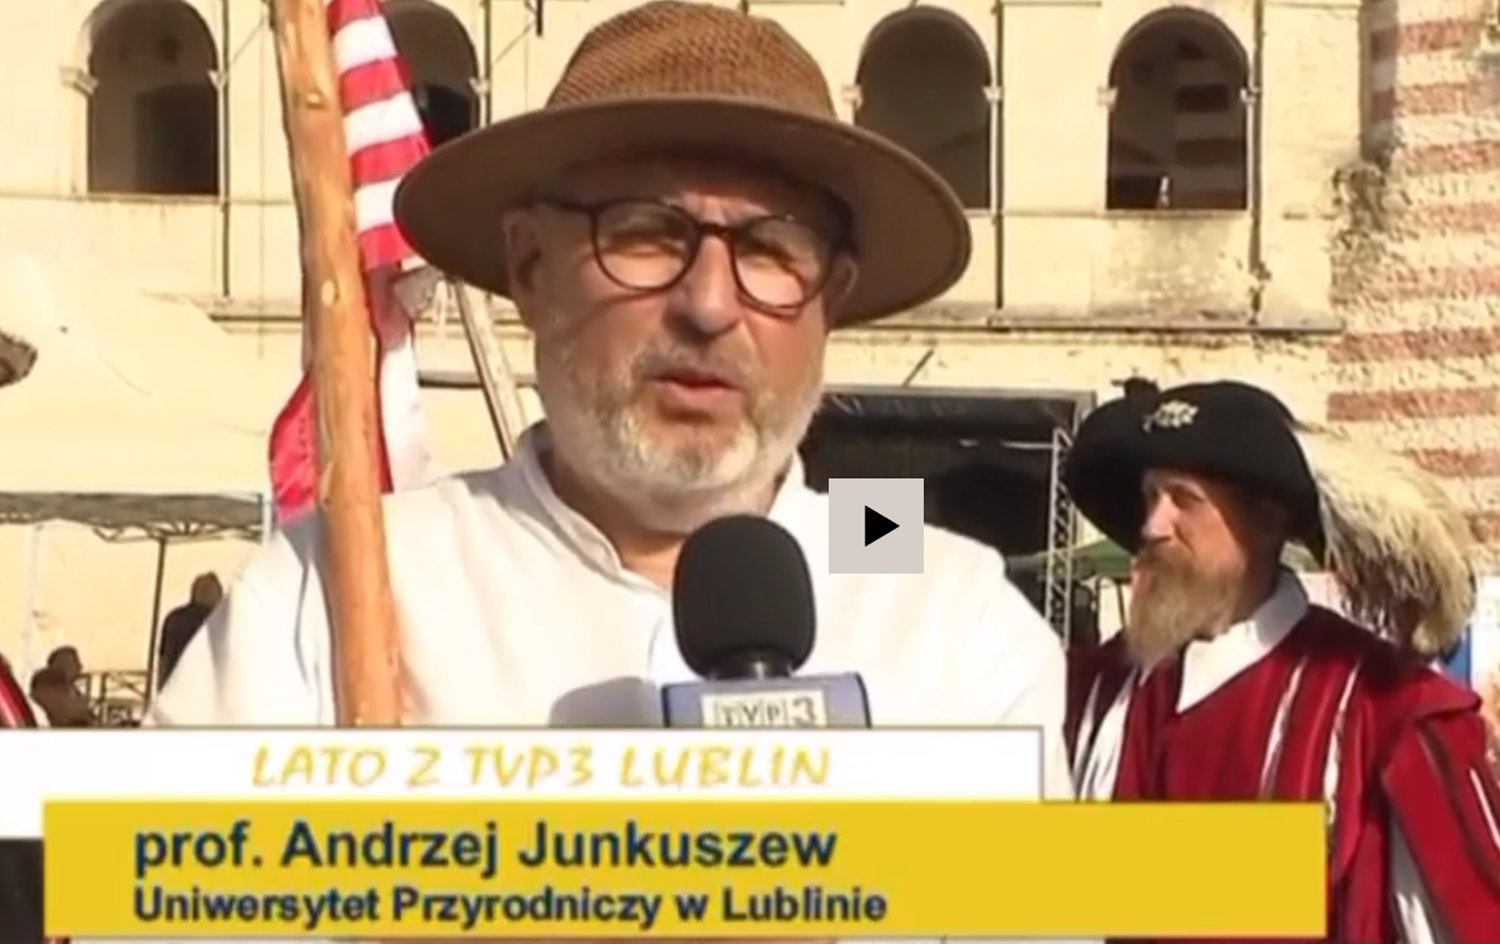 Prof. Andrzej Junkuszew w kapeluszu z kijem w tle Zamek w Janowcy, wypowiedź dla telewizji